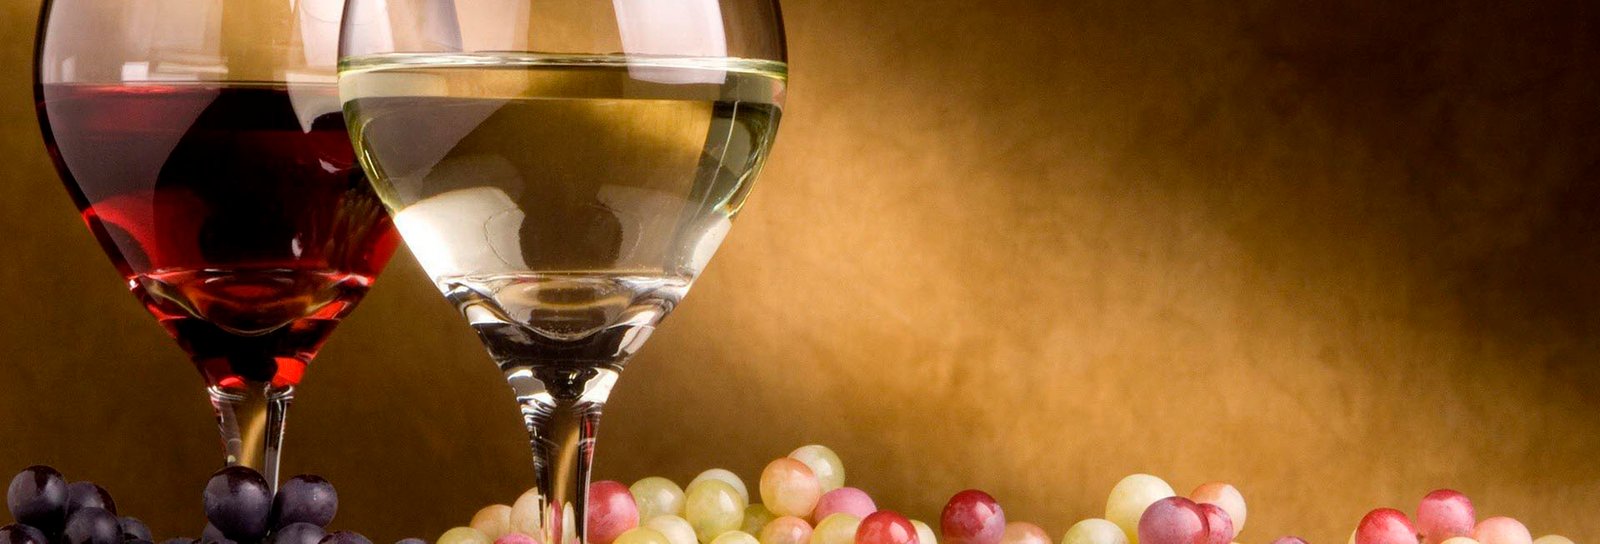 Lição 1 - Jesus transforma a água em vinho - SLIDES E VIDEOAULAS